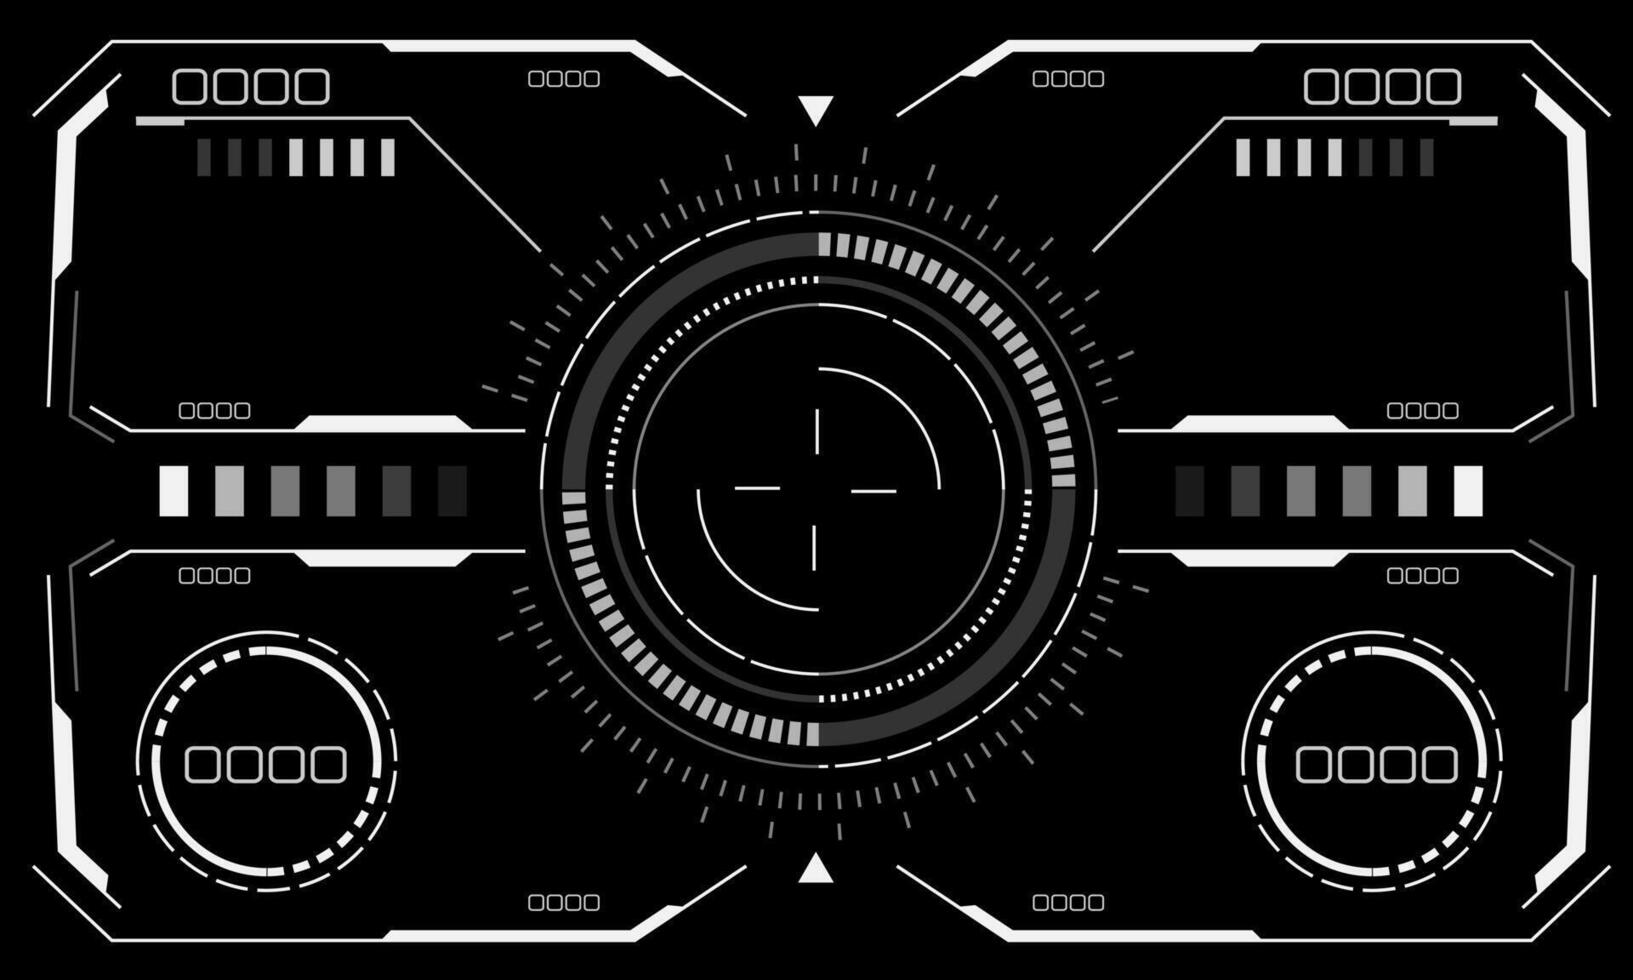 hud science-fiction interface écran vue blanc circulaire géométrique conception virtuel réalité futuriste La technologie Créatif afficher sur noir vecteur